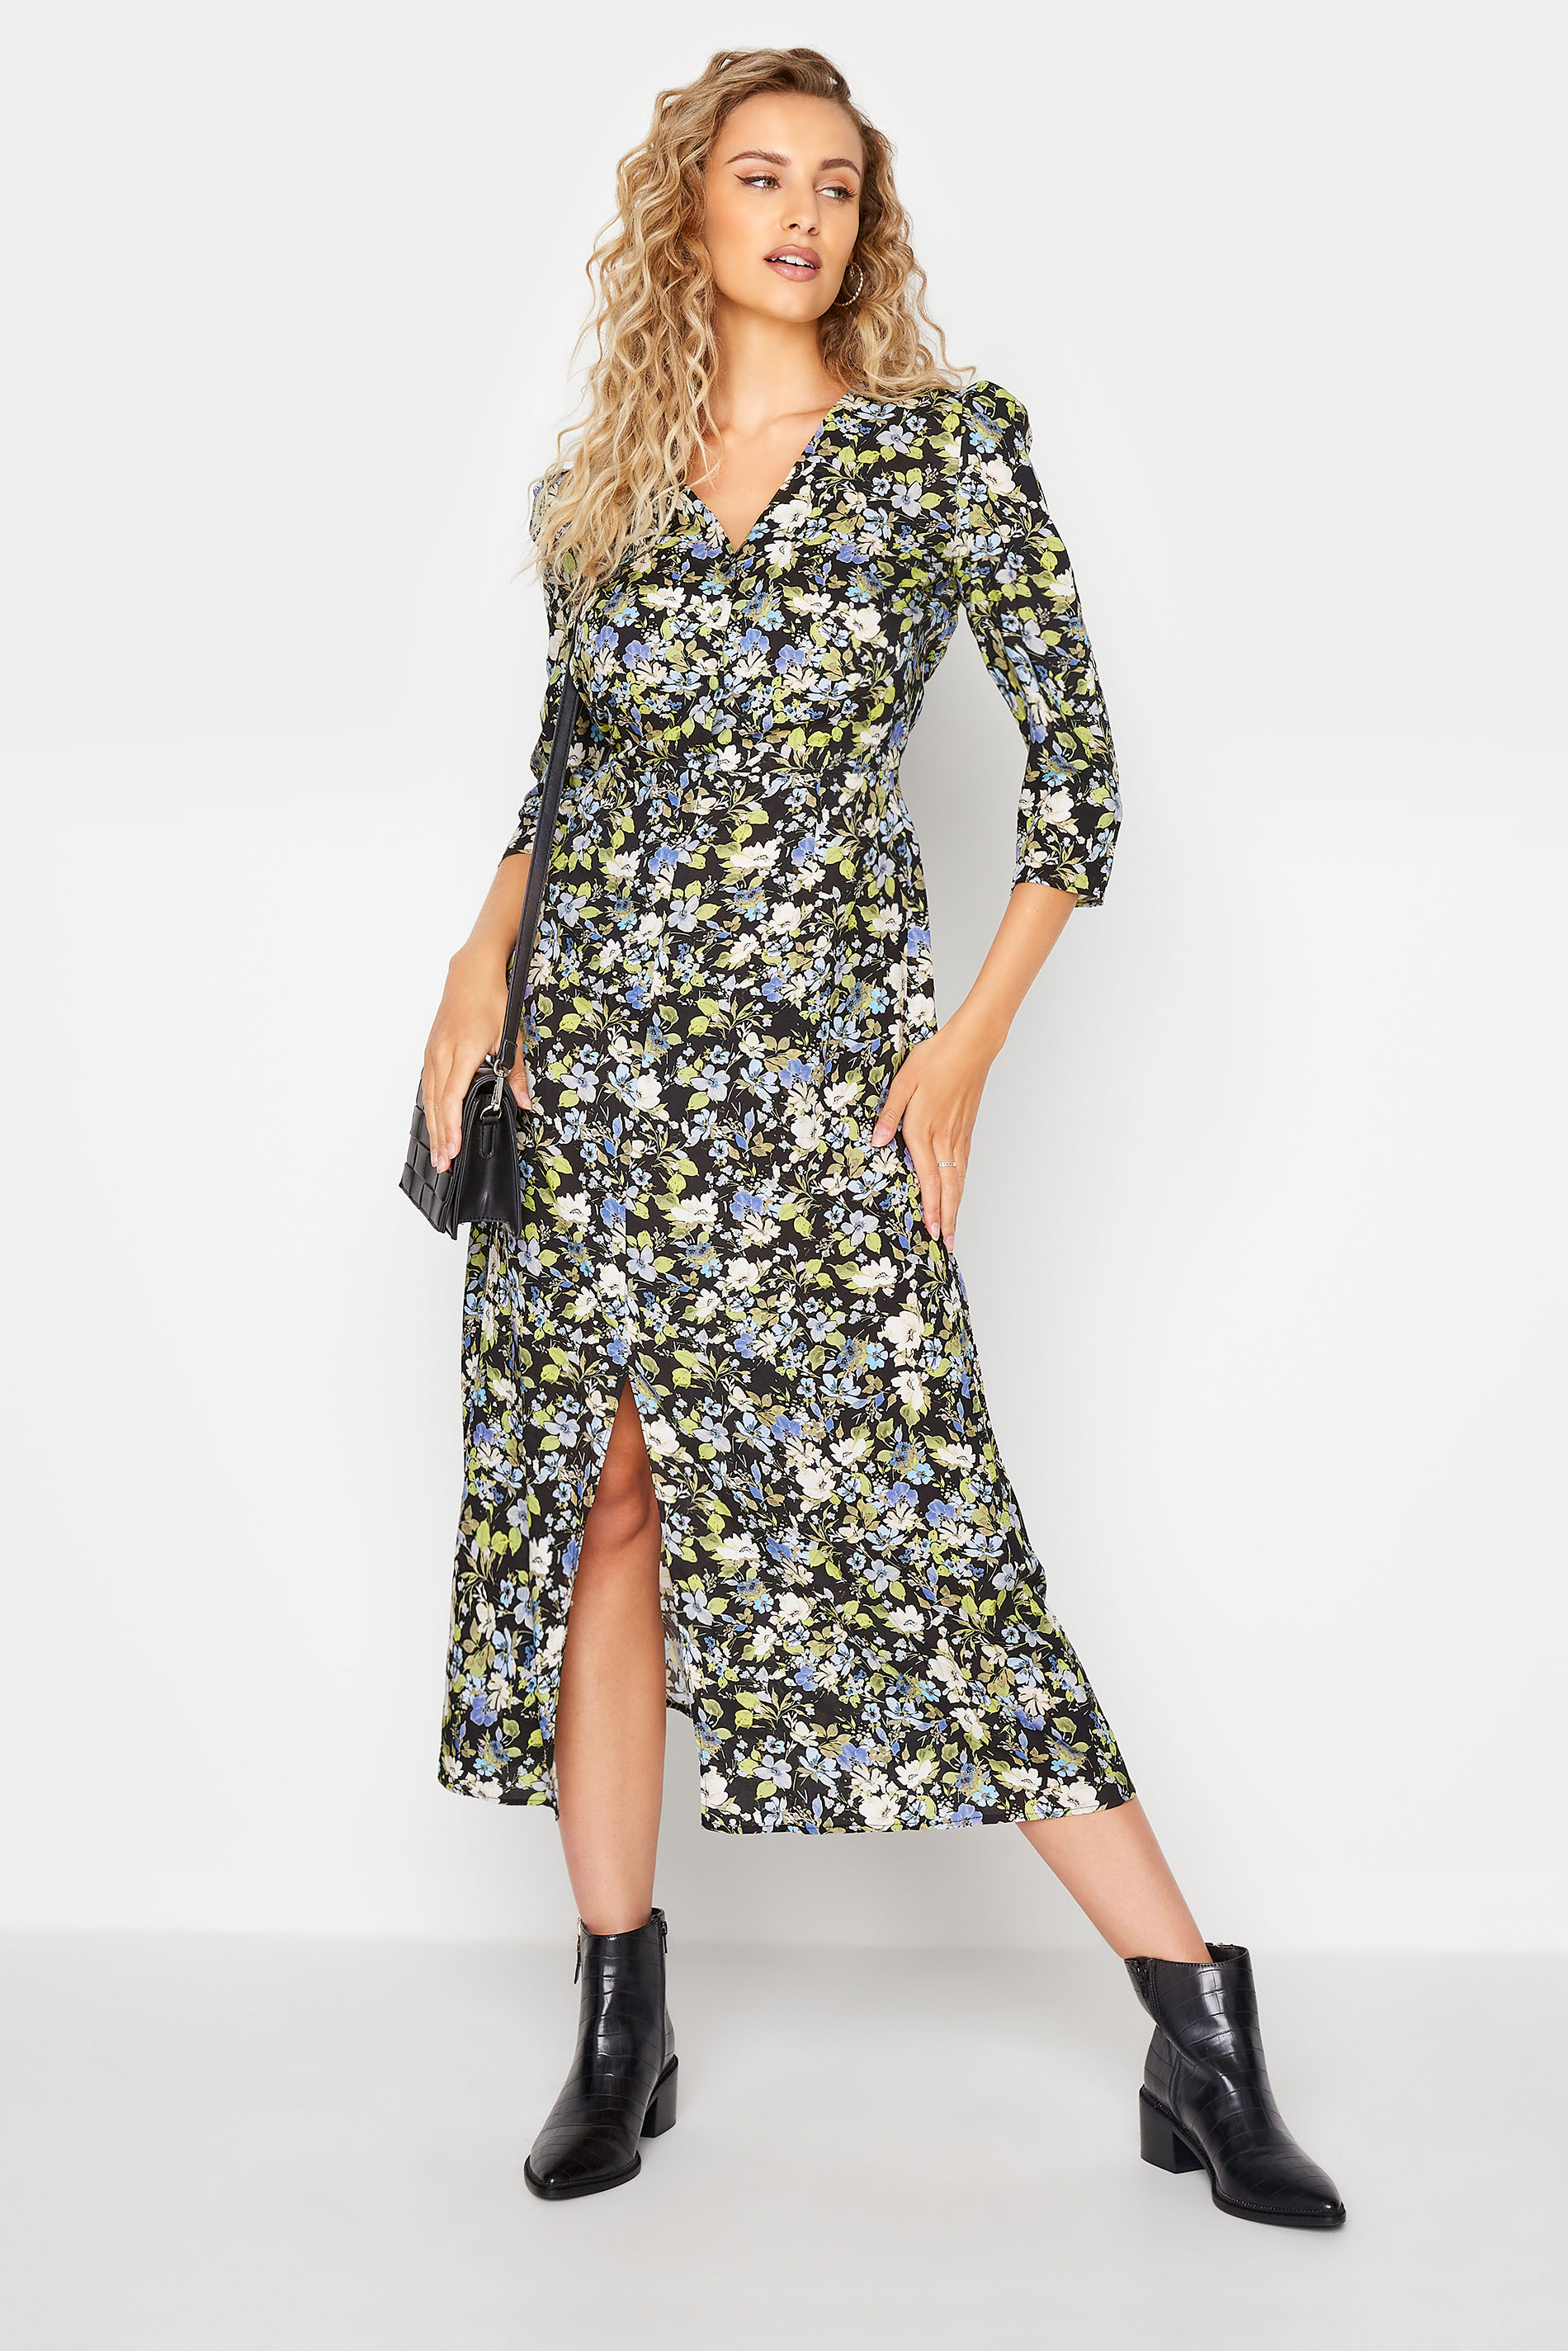 LTS Tall Black Floral Print Midaxi Tea Dress 1